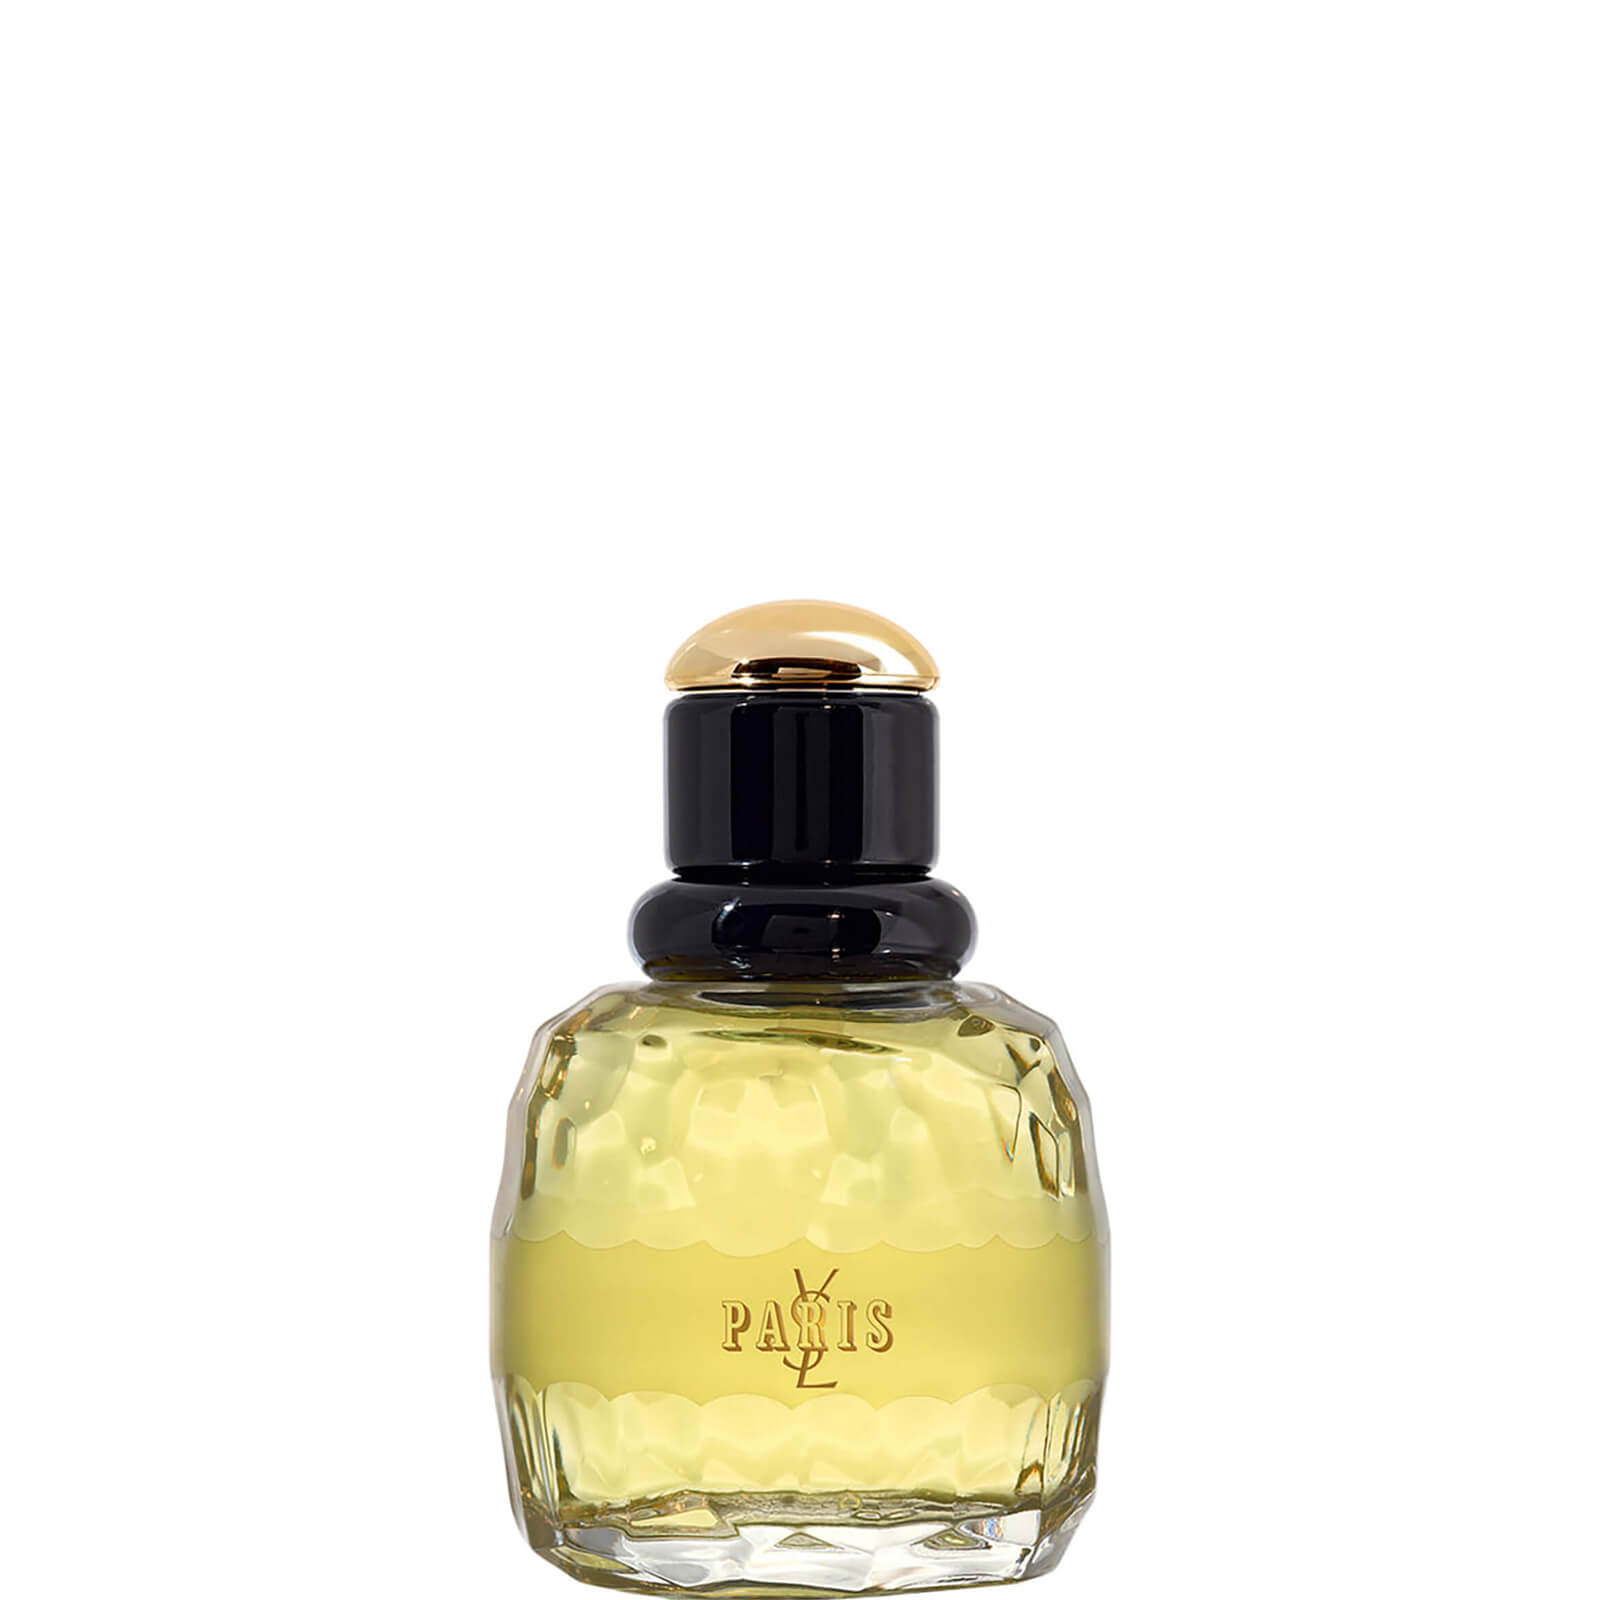 Image of Yves Saint Laurent Paris Eau de Parfum Profumo 50ml